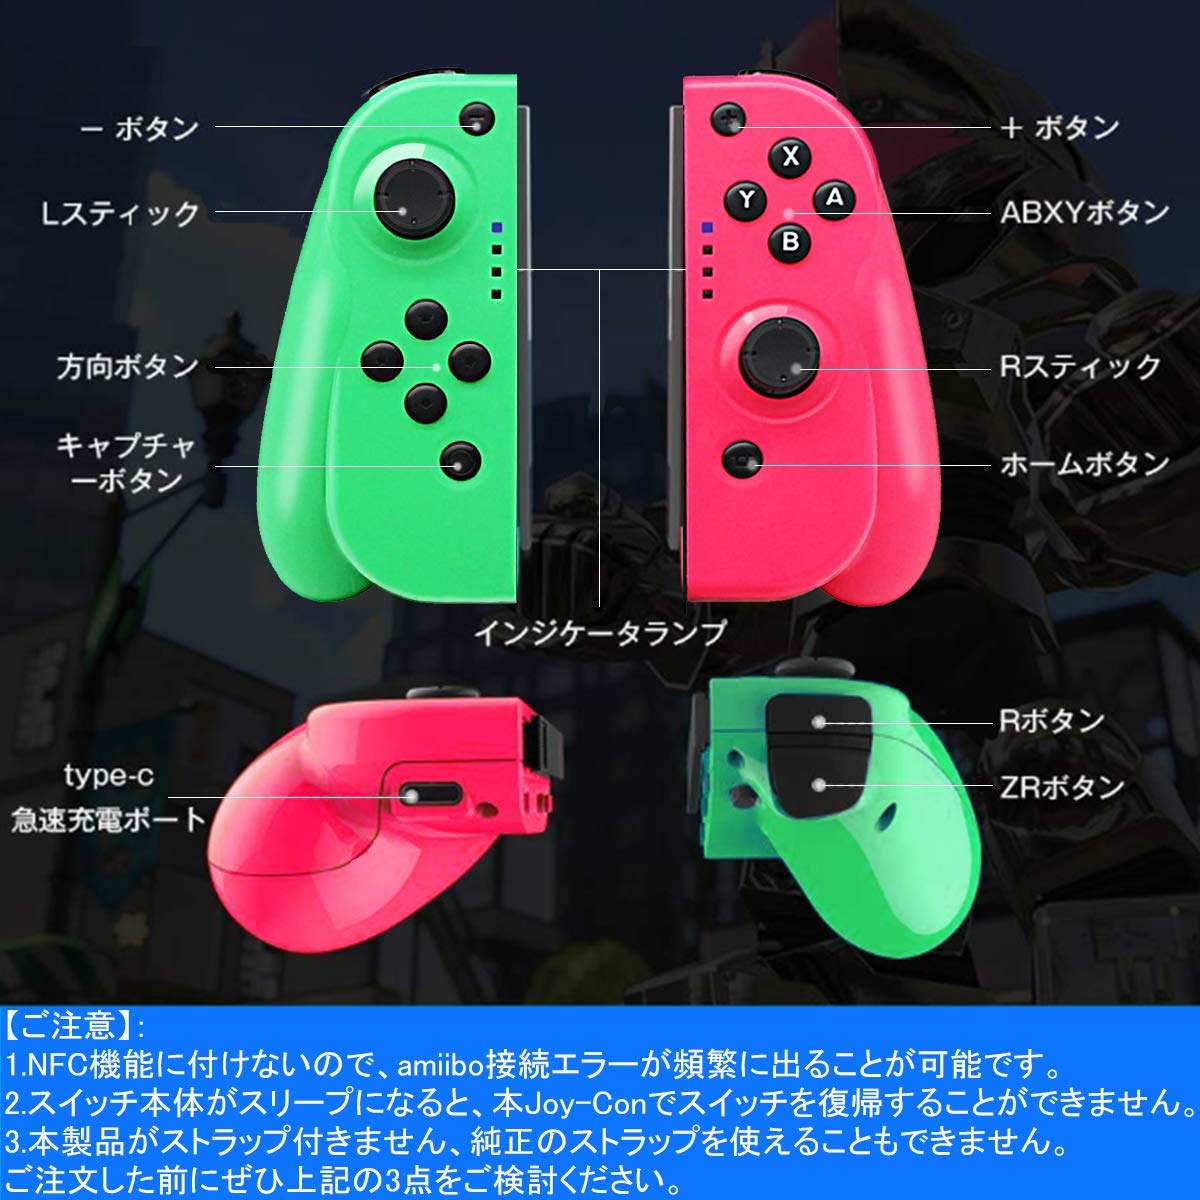 だま屋 スイッチ Nintendo Switch ジョイコン Joy Con互換 グリーン ピンク グリップ付き ワイヤレス 振動 ジャイロセンサー機能搭載 任天堂